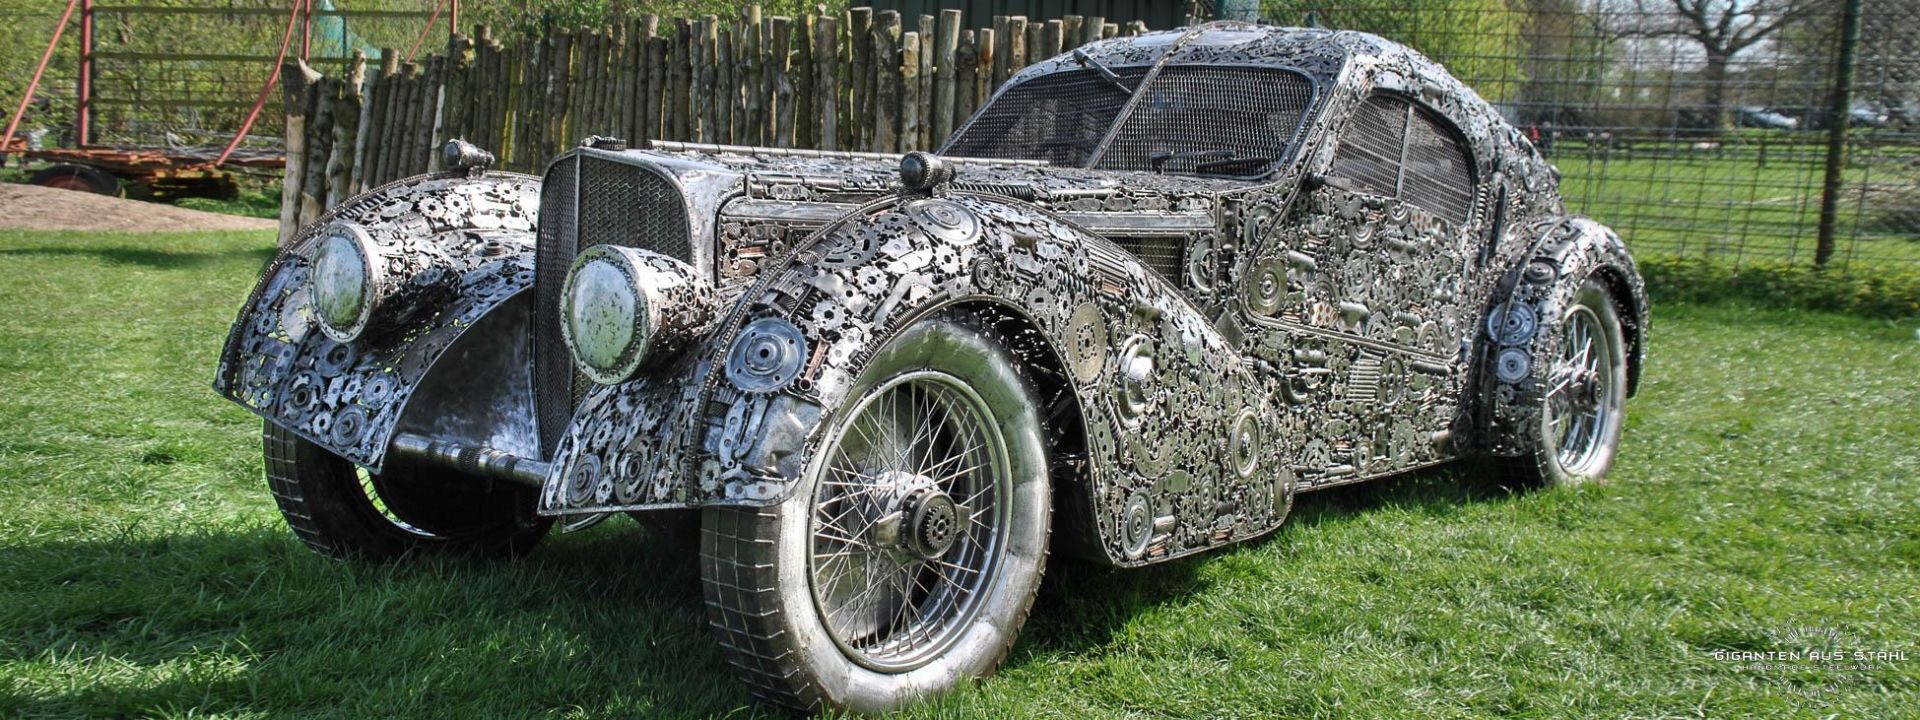 Bugatti-Atlantic-57SC